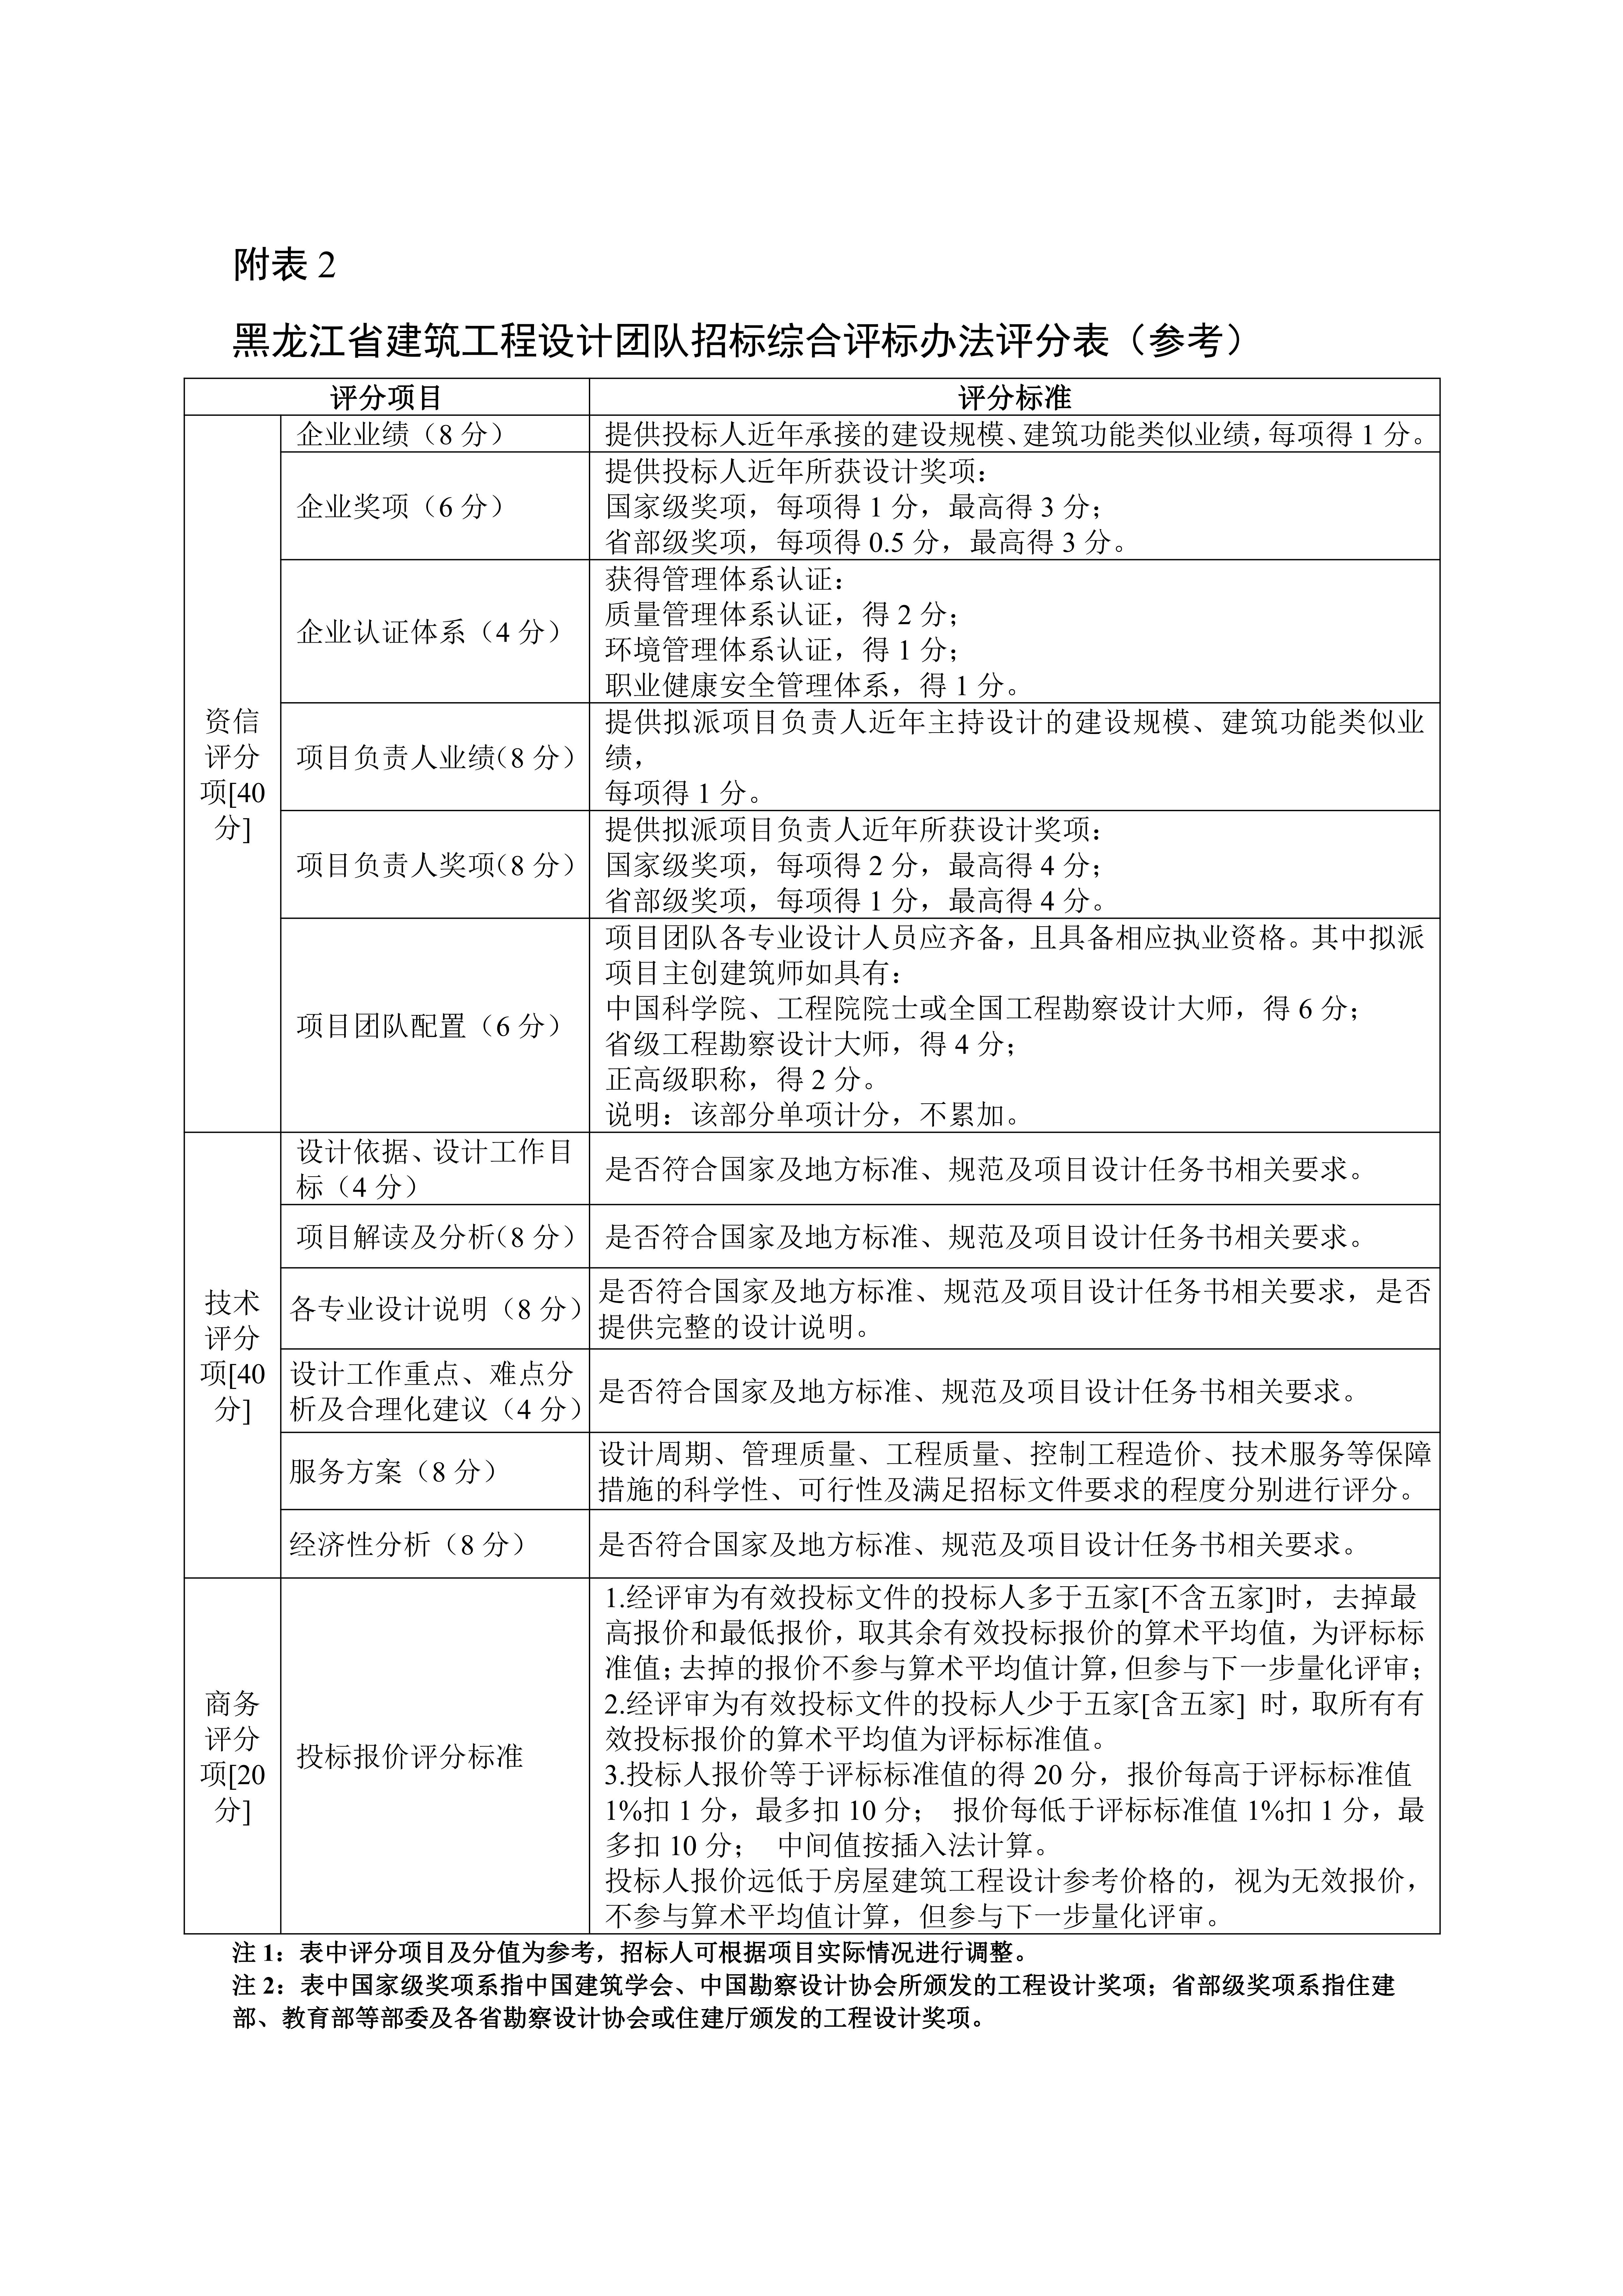 黑龙江省建筑工程设计招标投标管理实施细则（暂行）_09.jpg